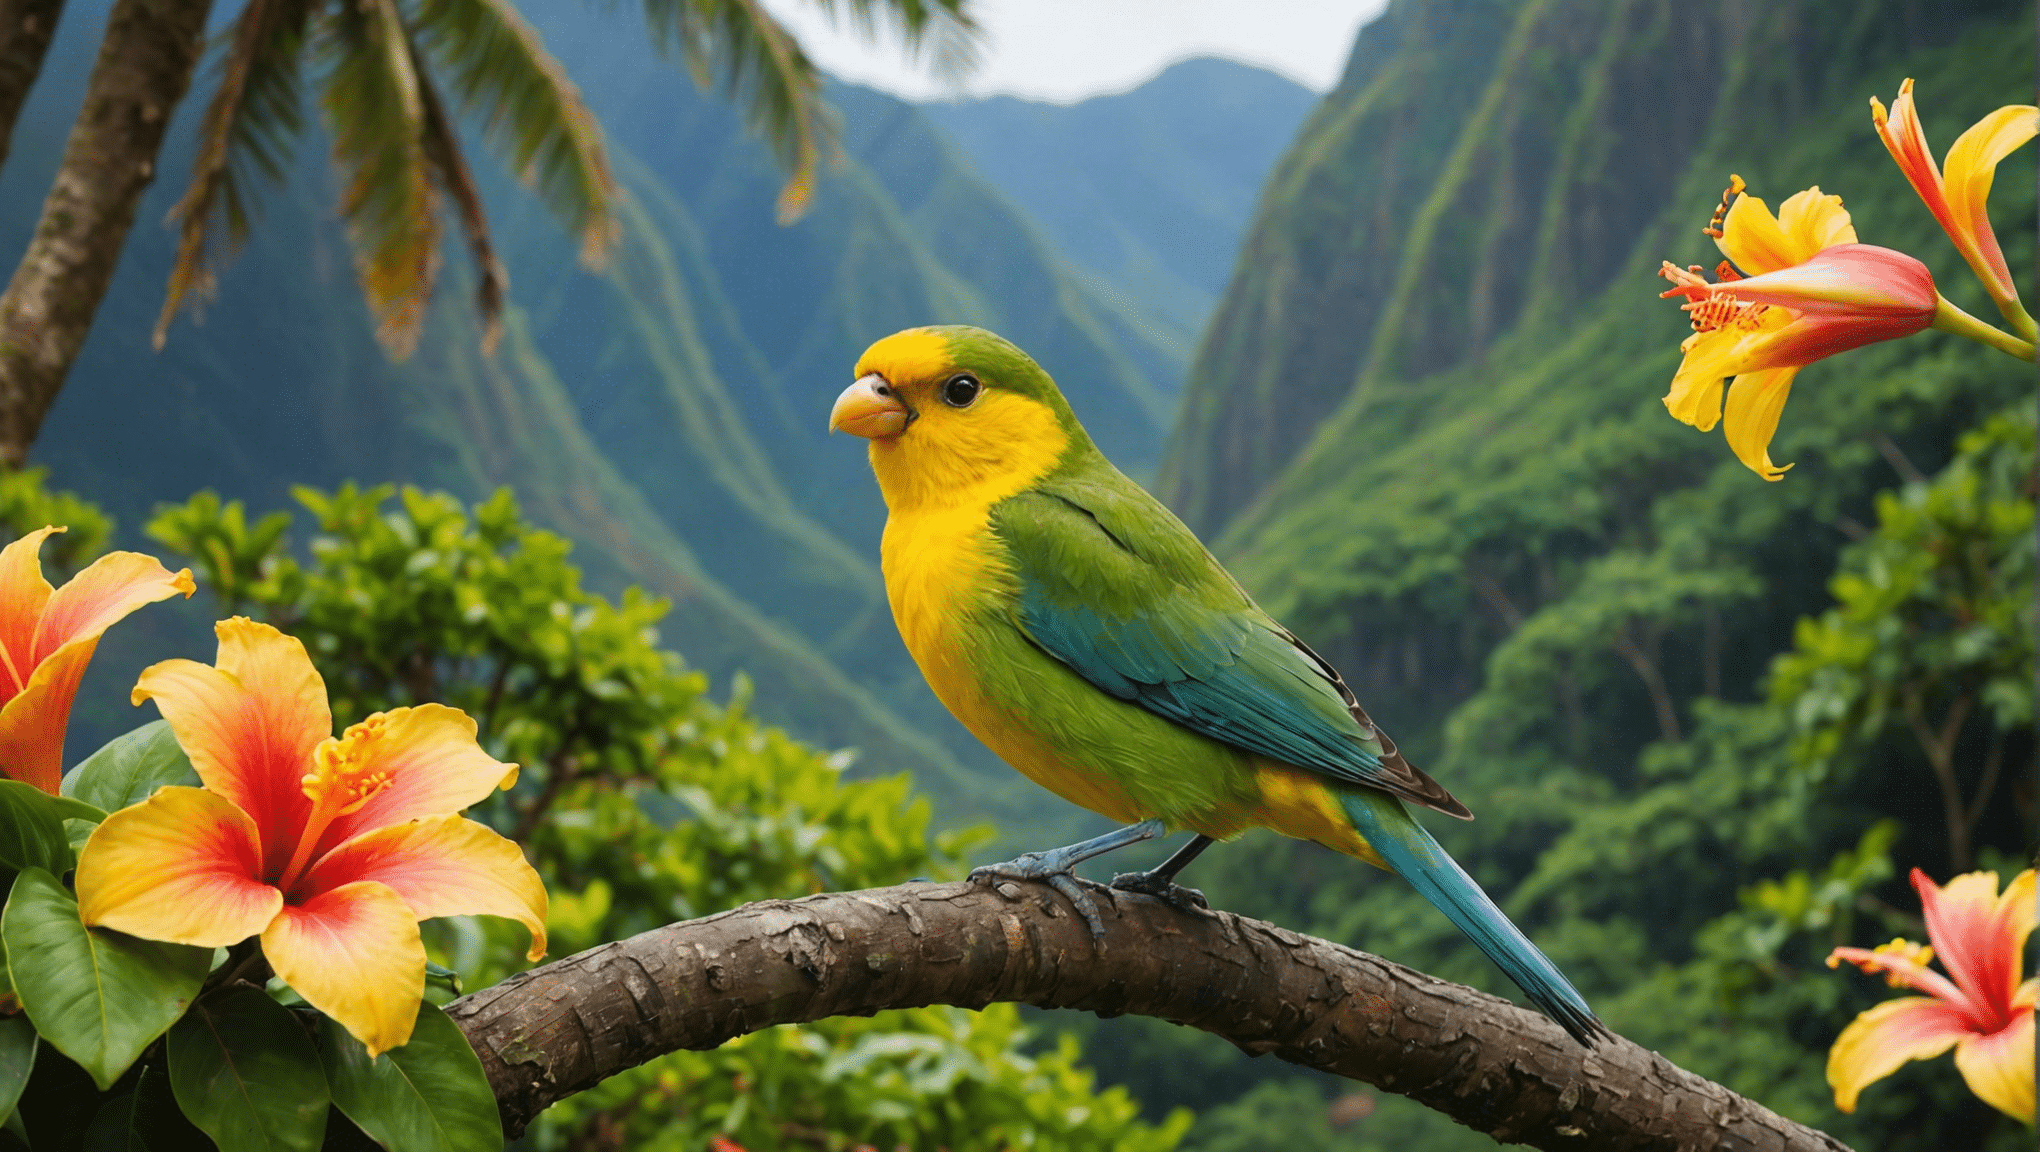 odkrijte značilne vrste ptic na Havajih in njihove zanimive značilnosti. raziščite edinstveno favno ptic tega rajskega otoka.